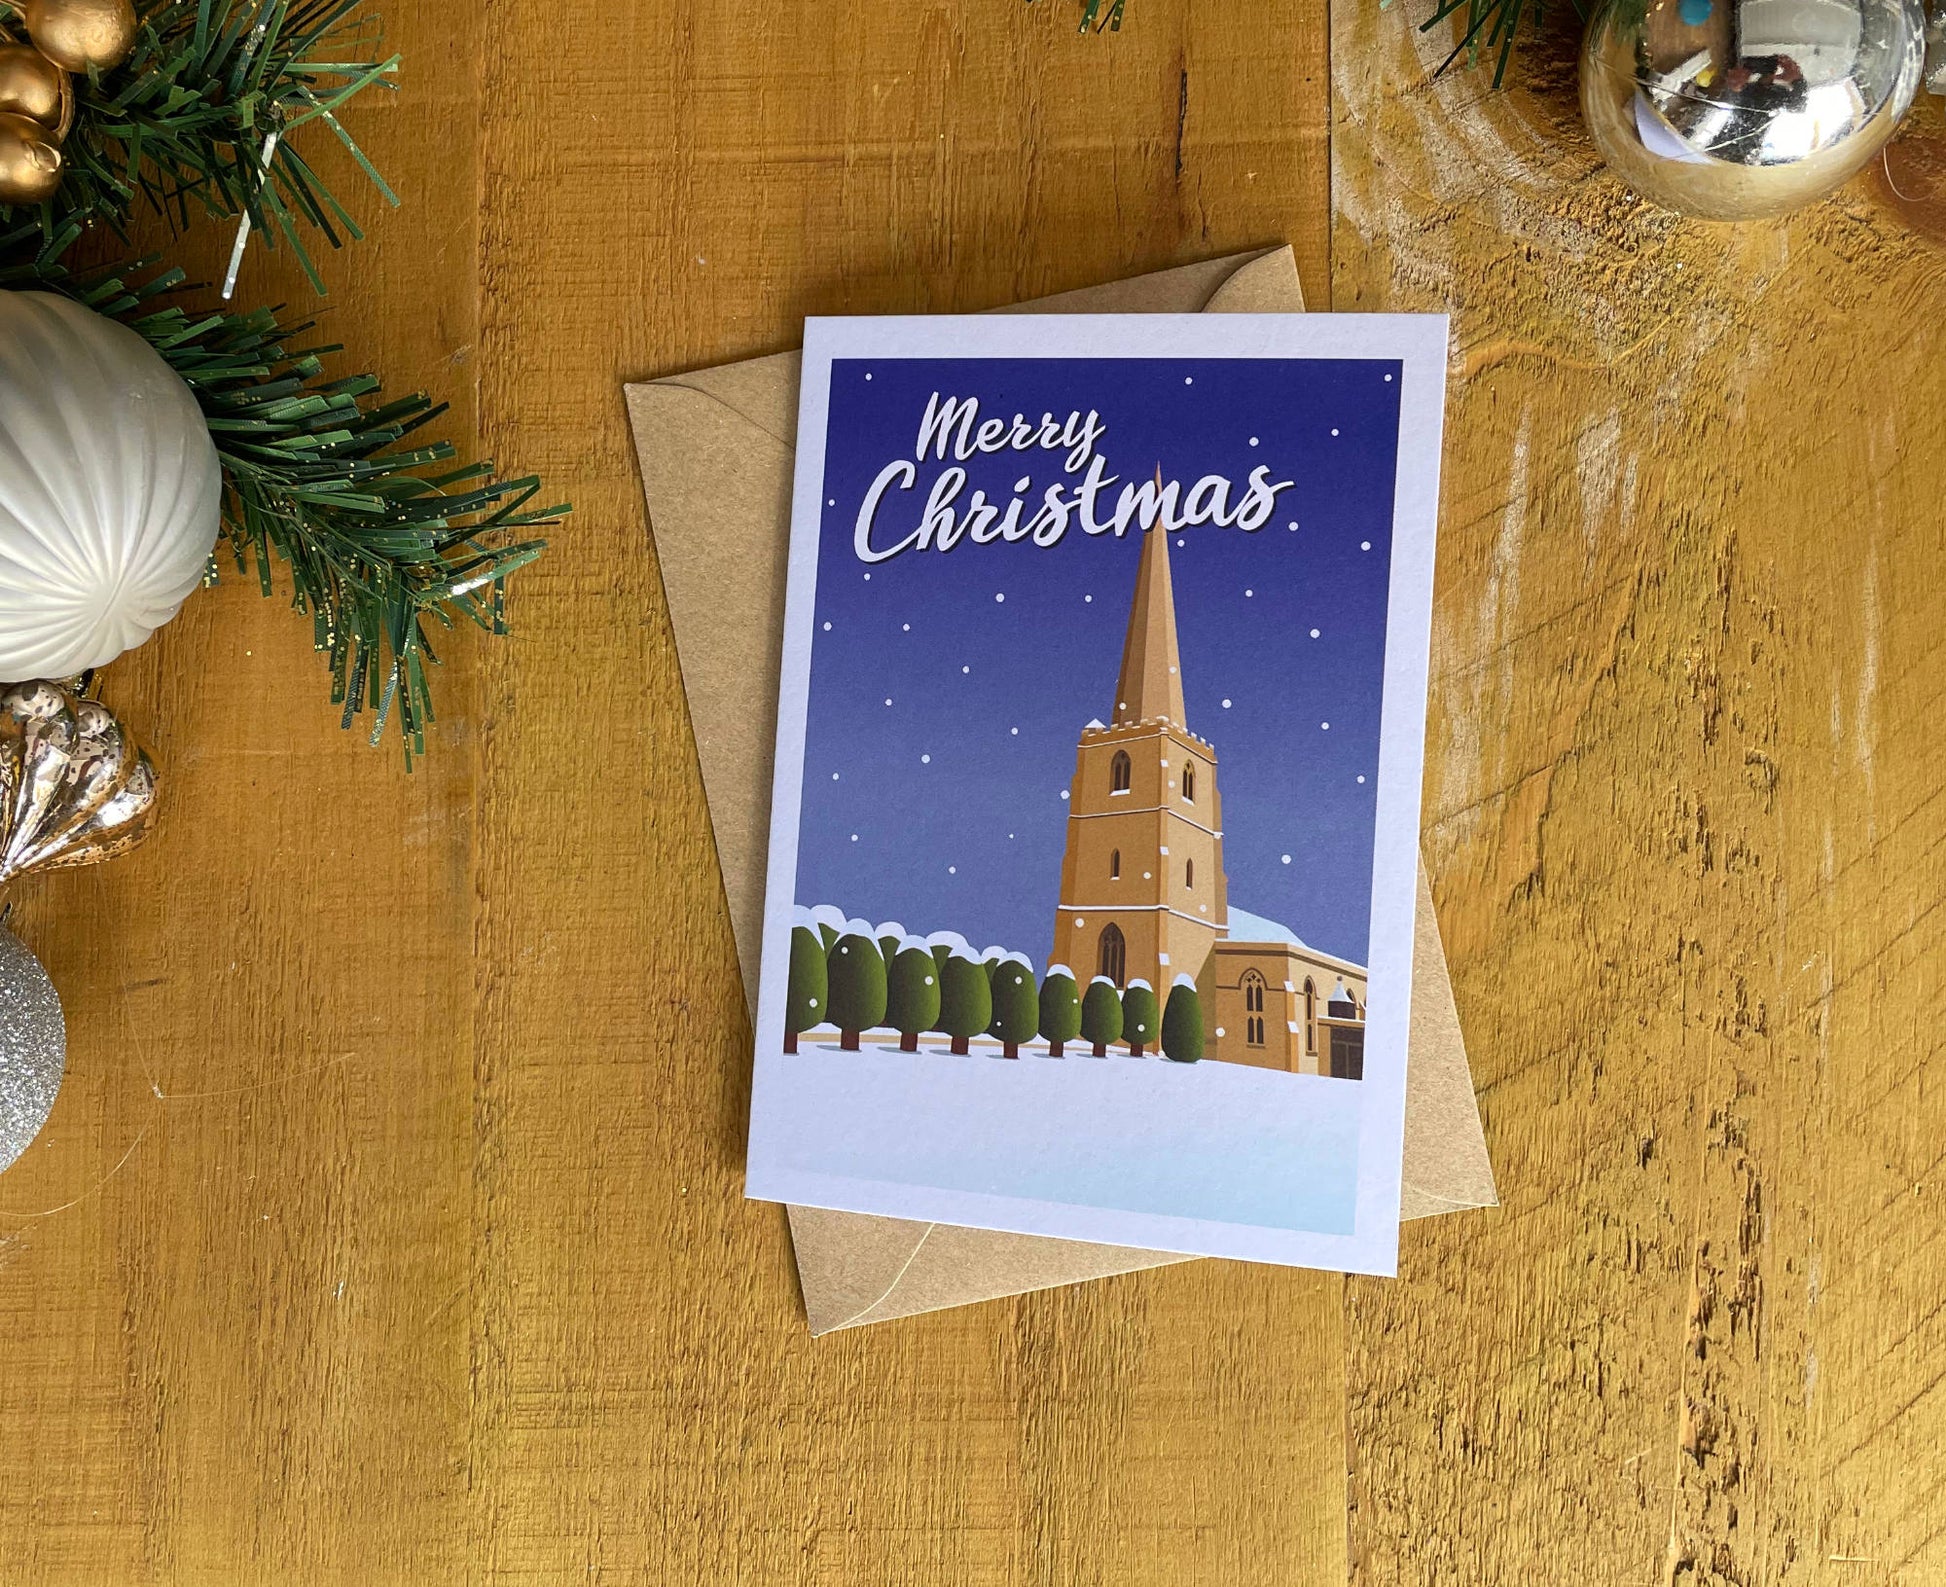 Painswick Church Christmas Card Snow on table